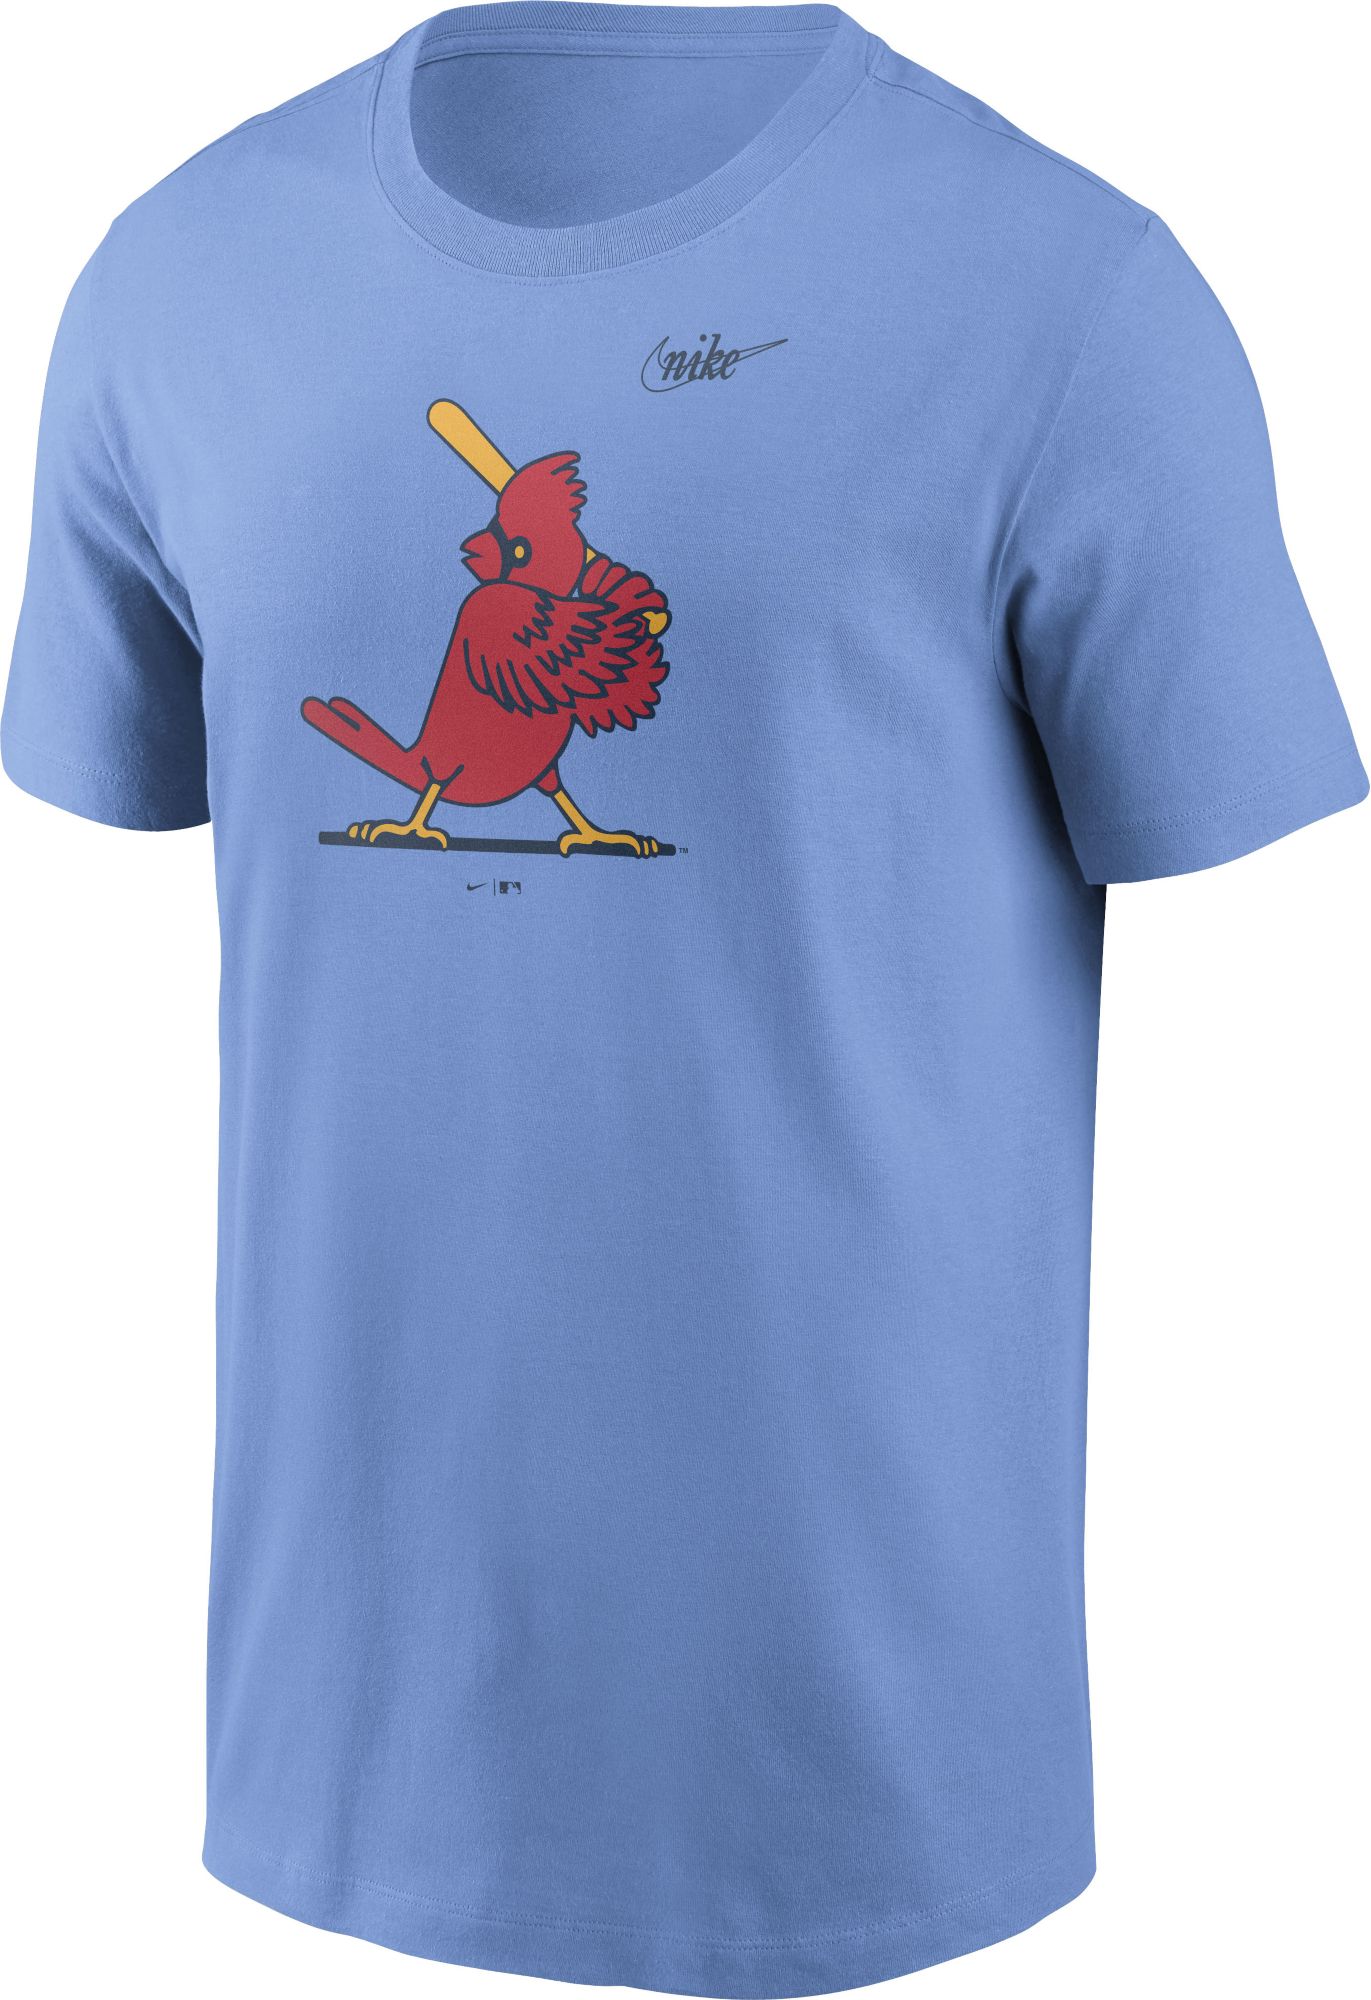 cardinals powder blue shirt